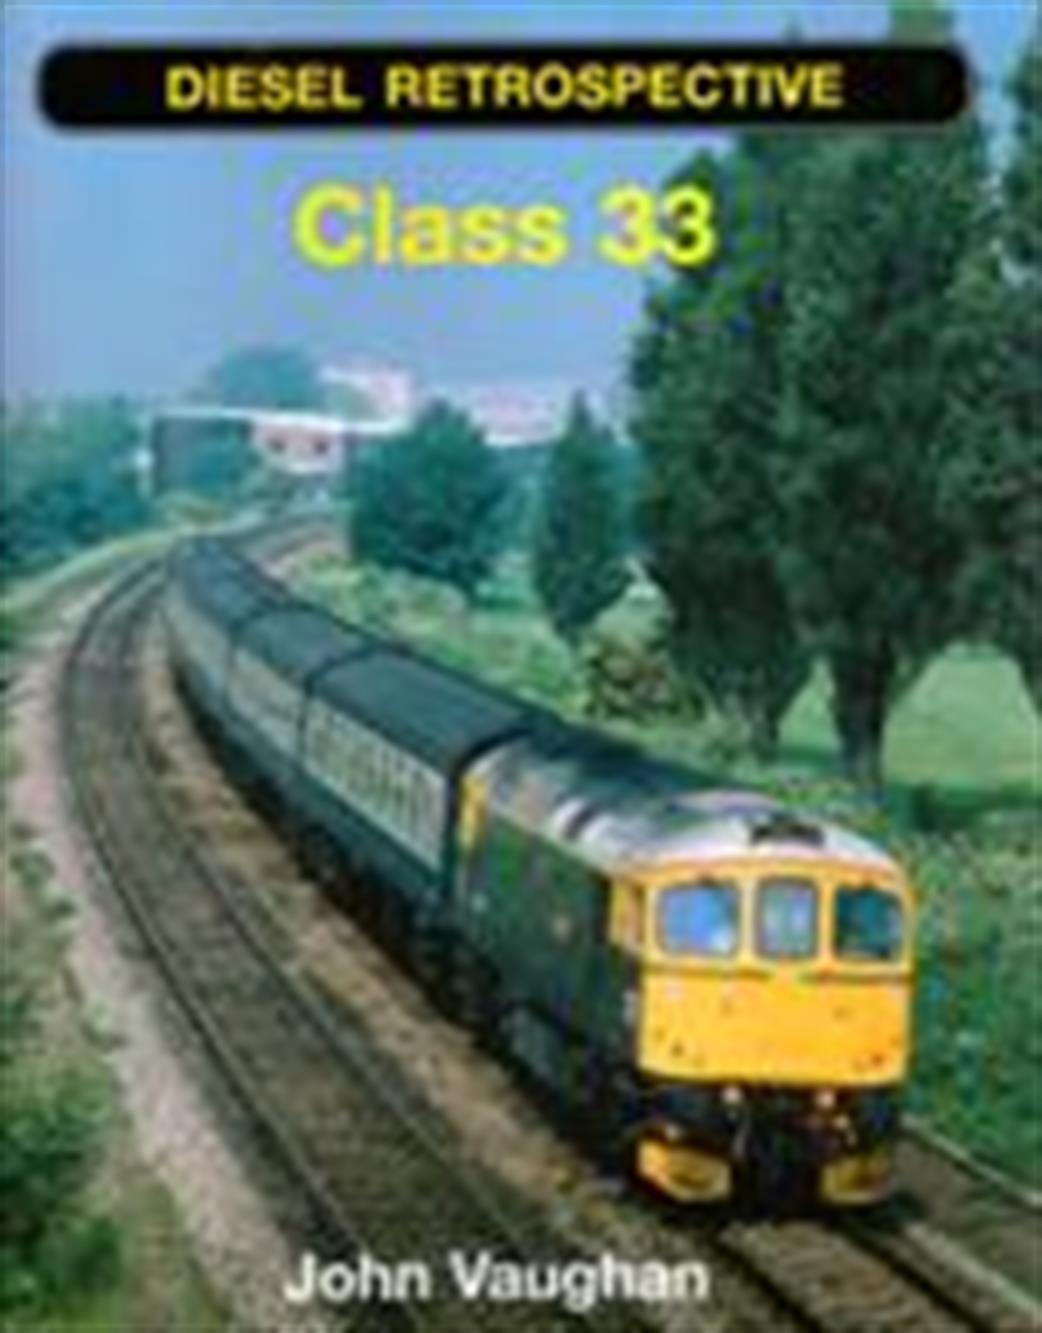 Ian Allan Publishing  9780711032842 Diesel Retrospective Class 33 by John Vaughan